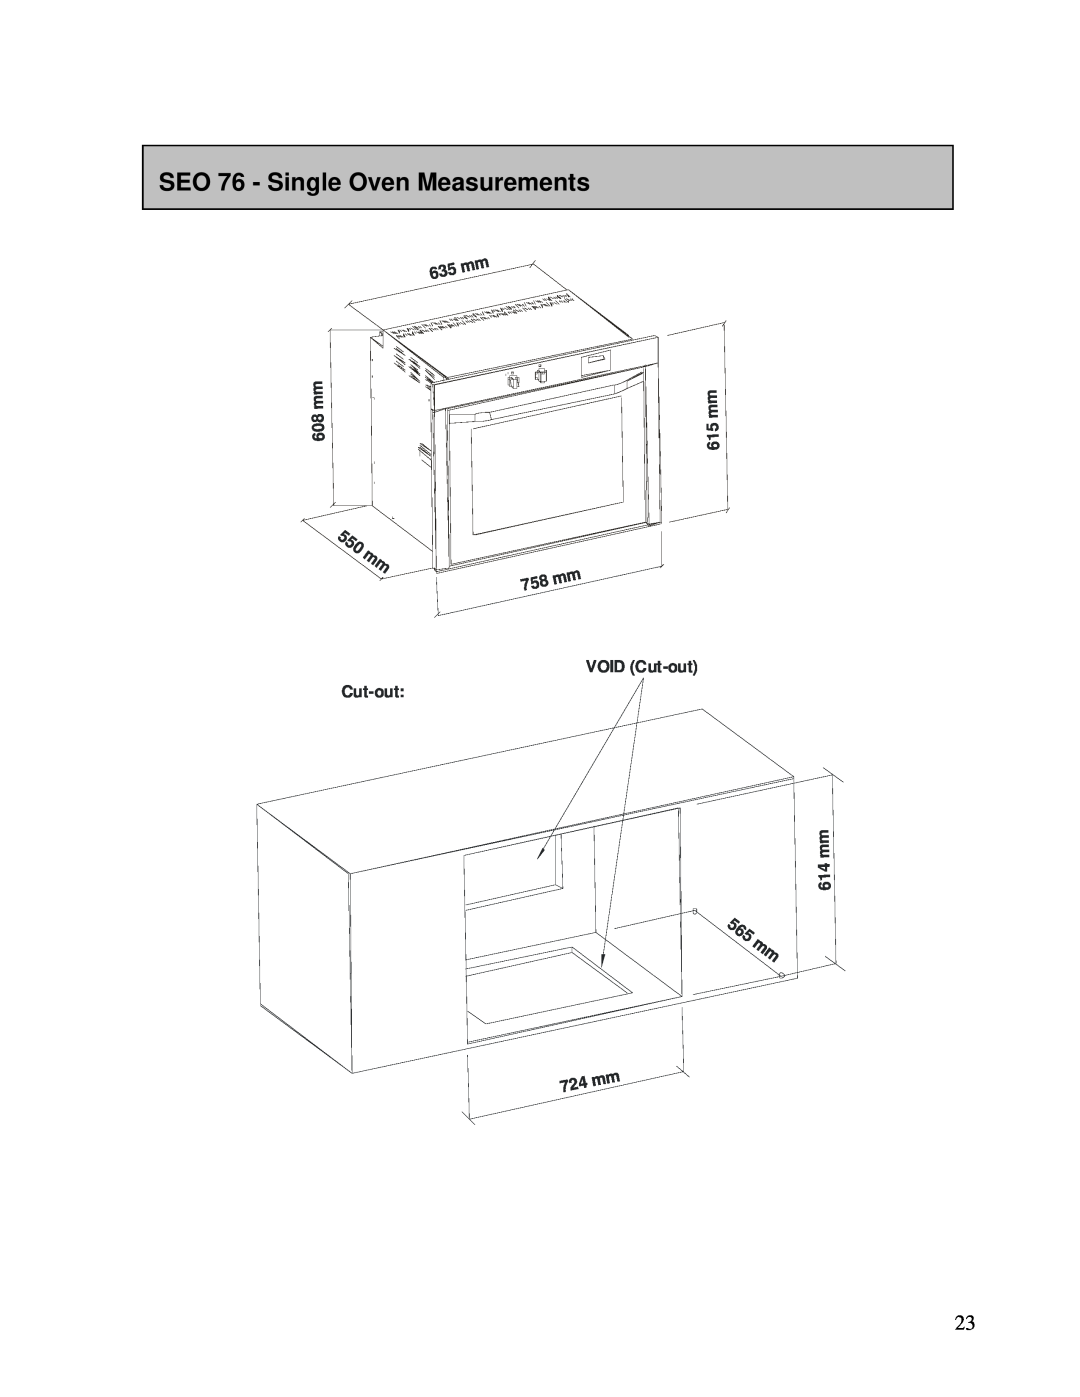 AEG DE076, DEO76 user manual SEO 76 - Single Oven Measurements, 5 6 5mm, m m 8 0, m m 5 1, m m 4 1, VOID Cut-out 